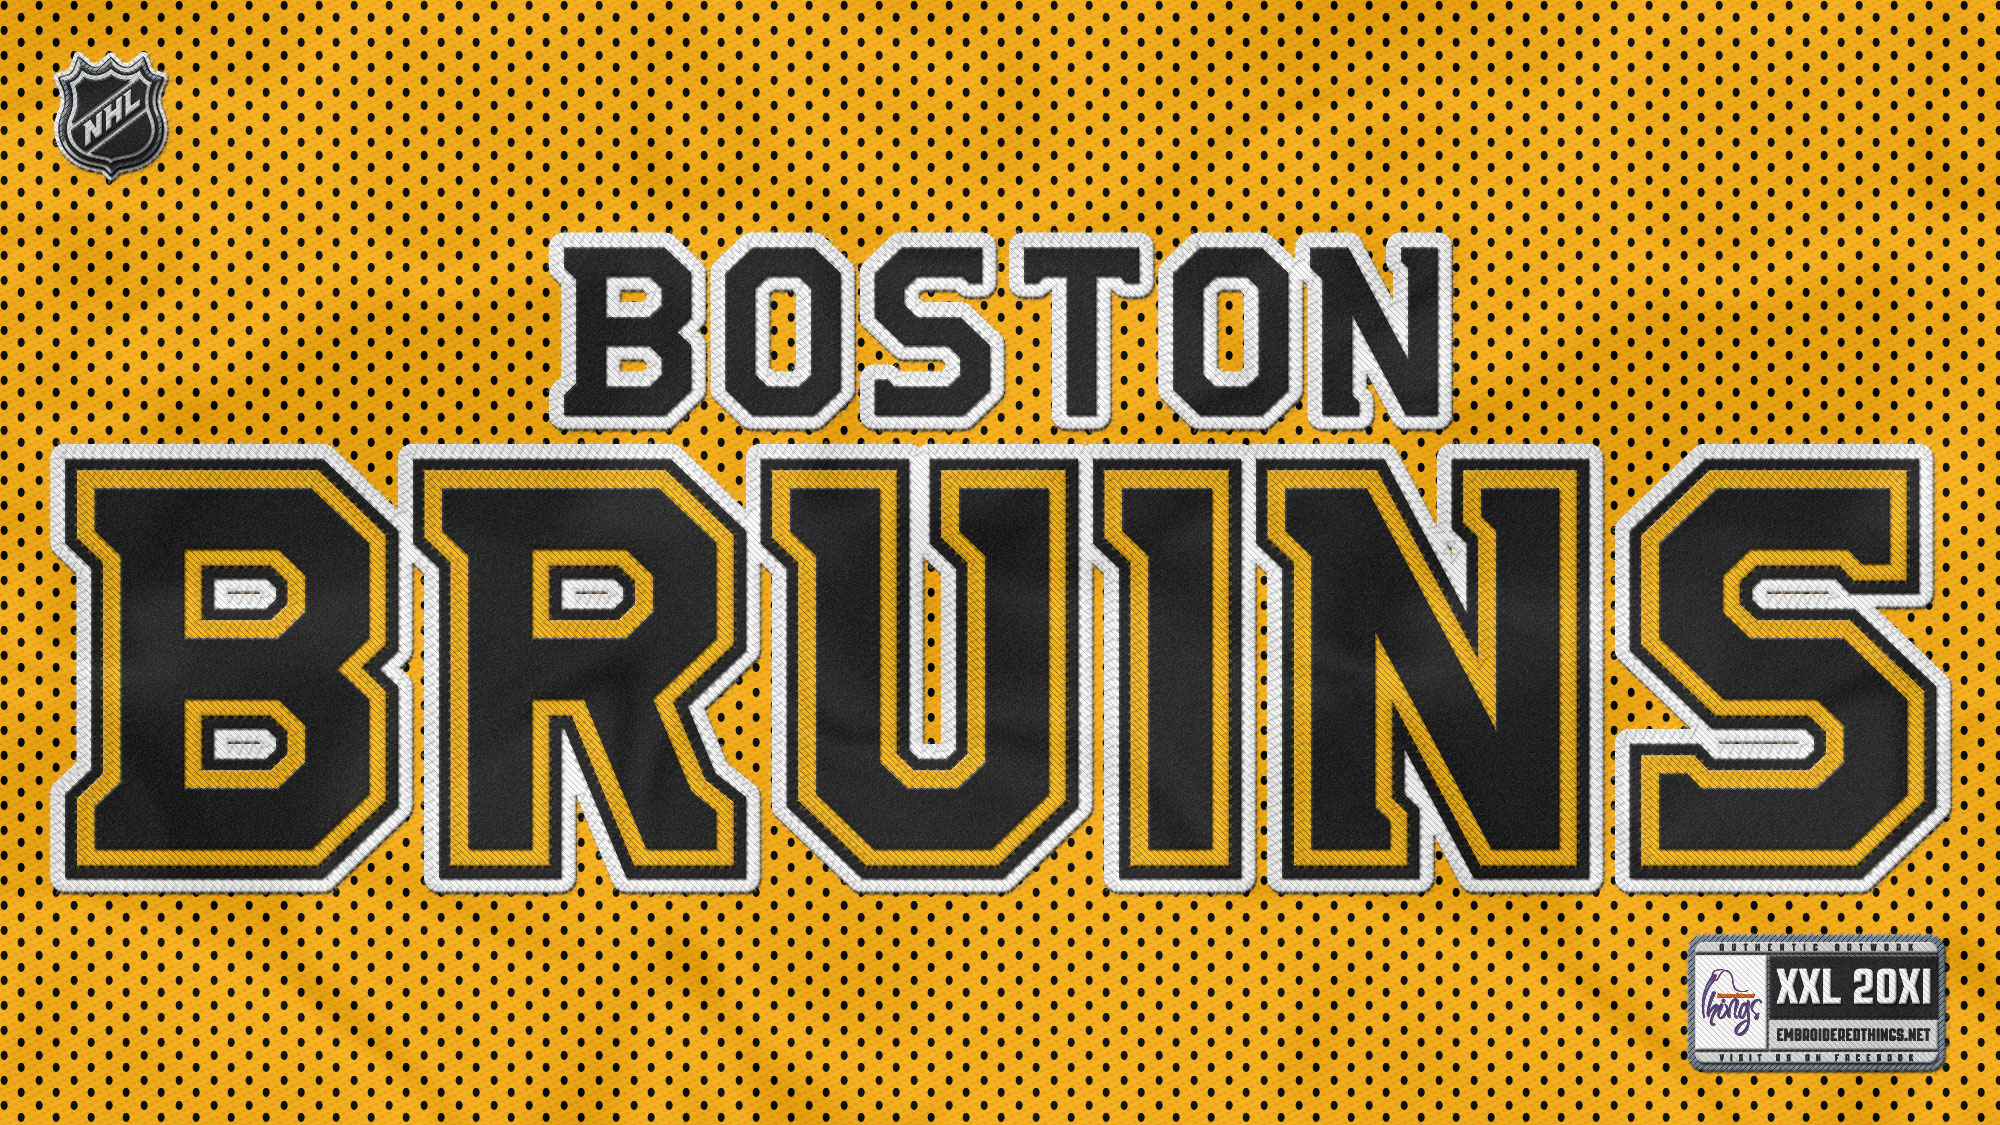 Boston Bruins Wallpaper For